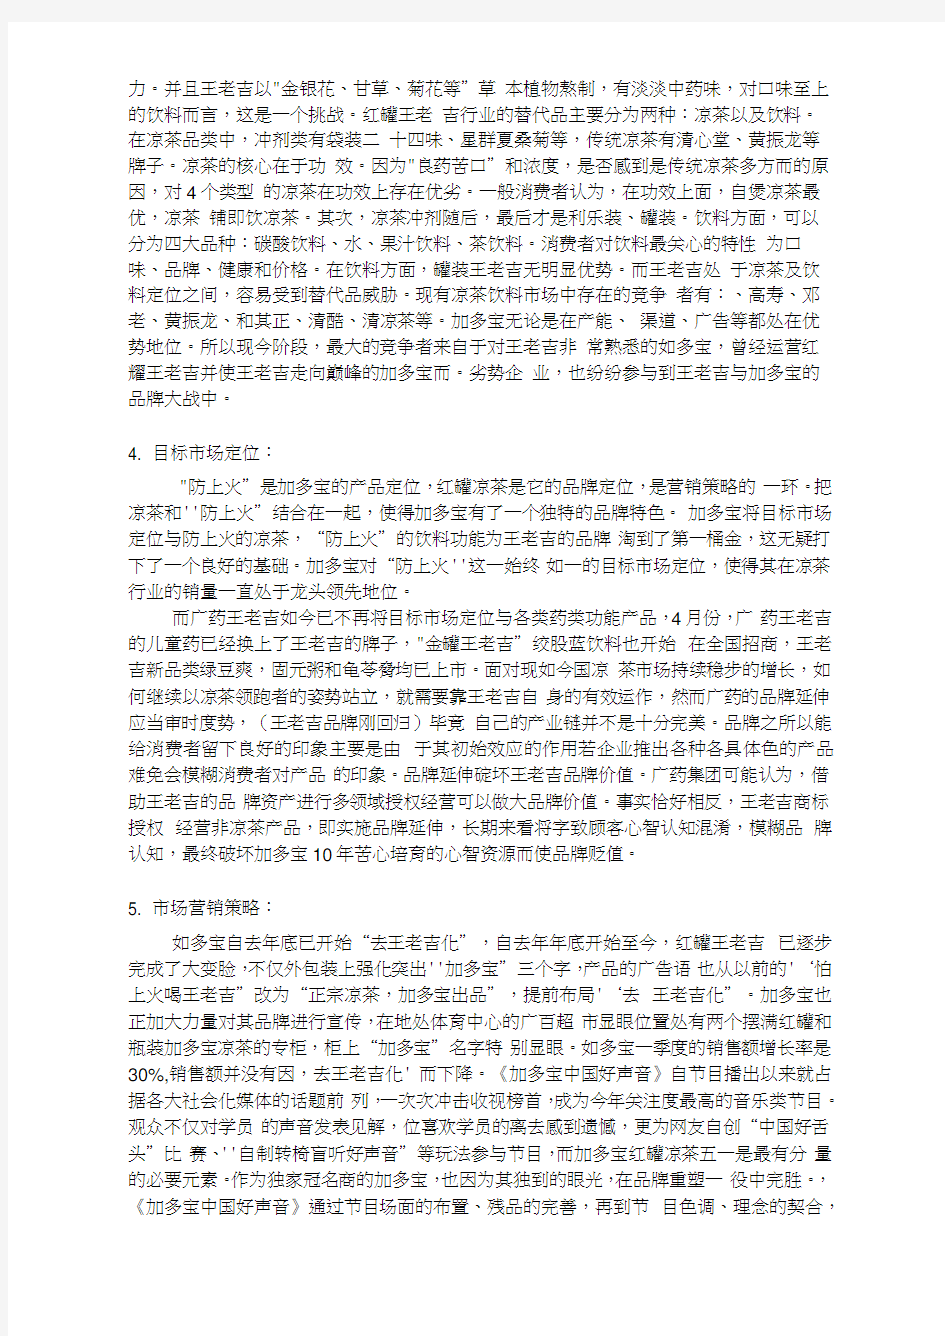 加多宝与王老吉的竞争案例分析报告